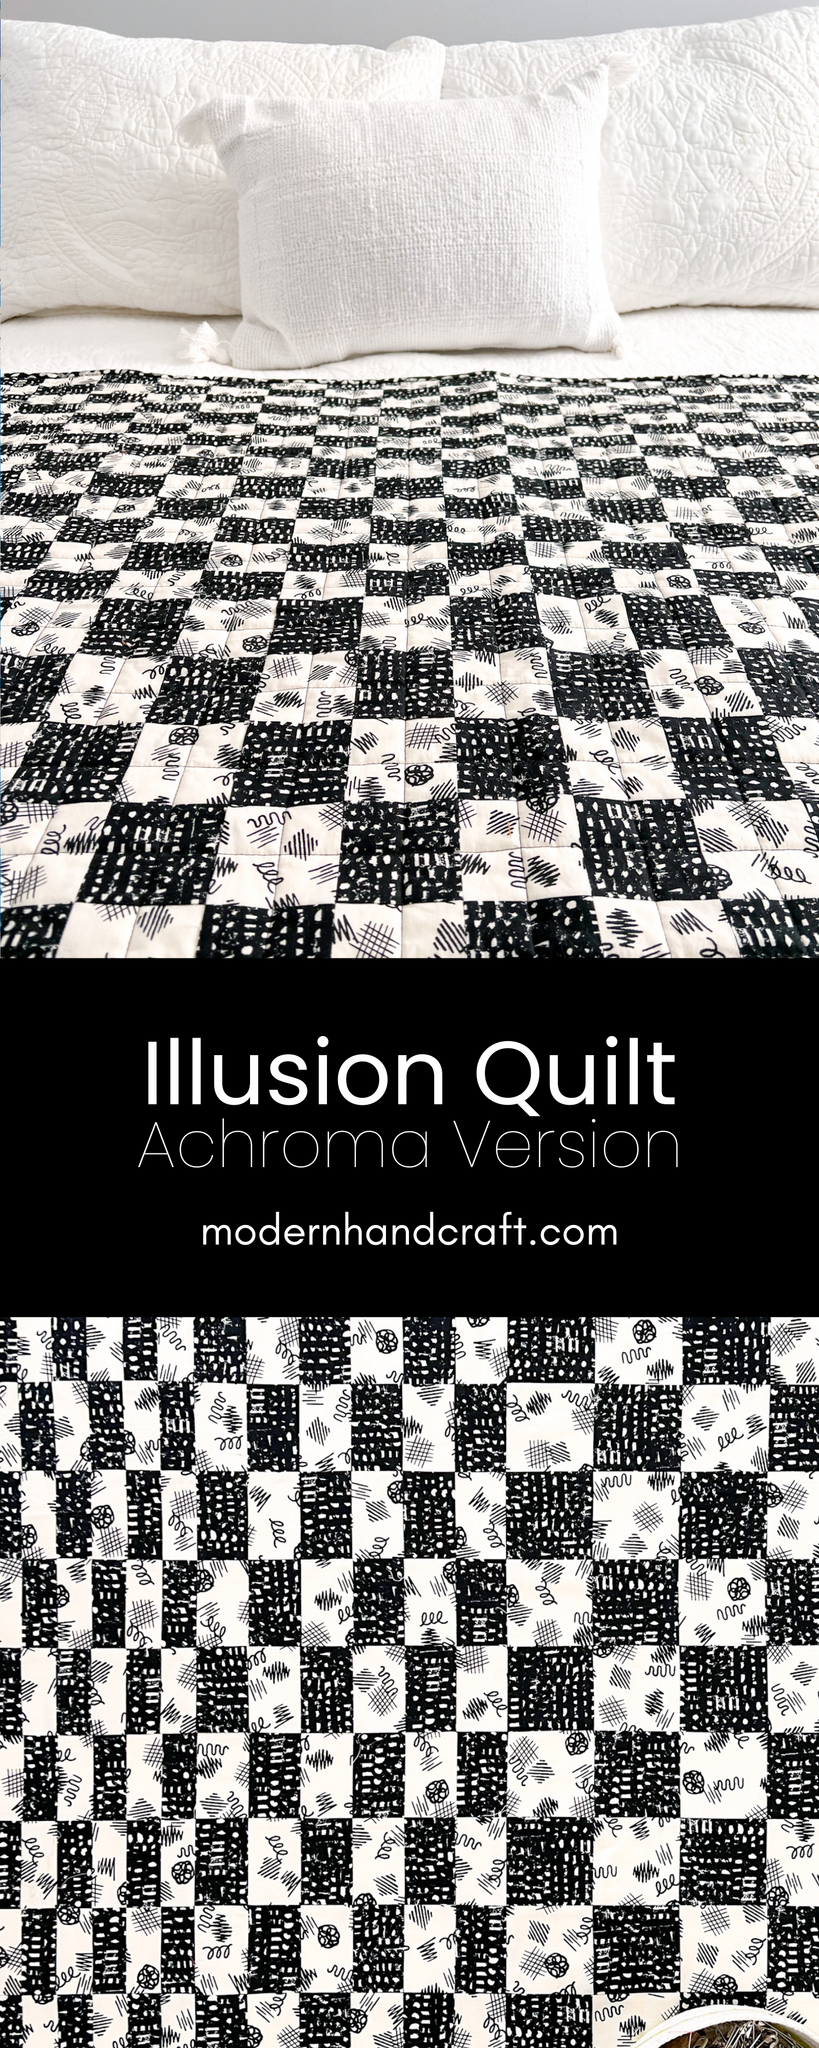 Illusion Quilt - Achroma Version by ModernHandcraft.com